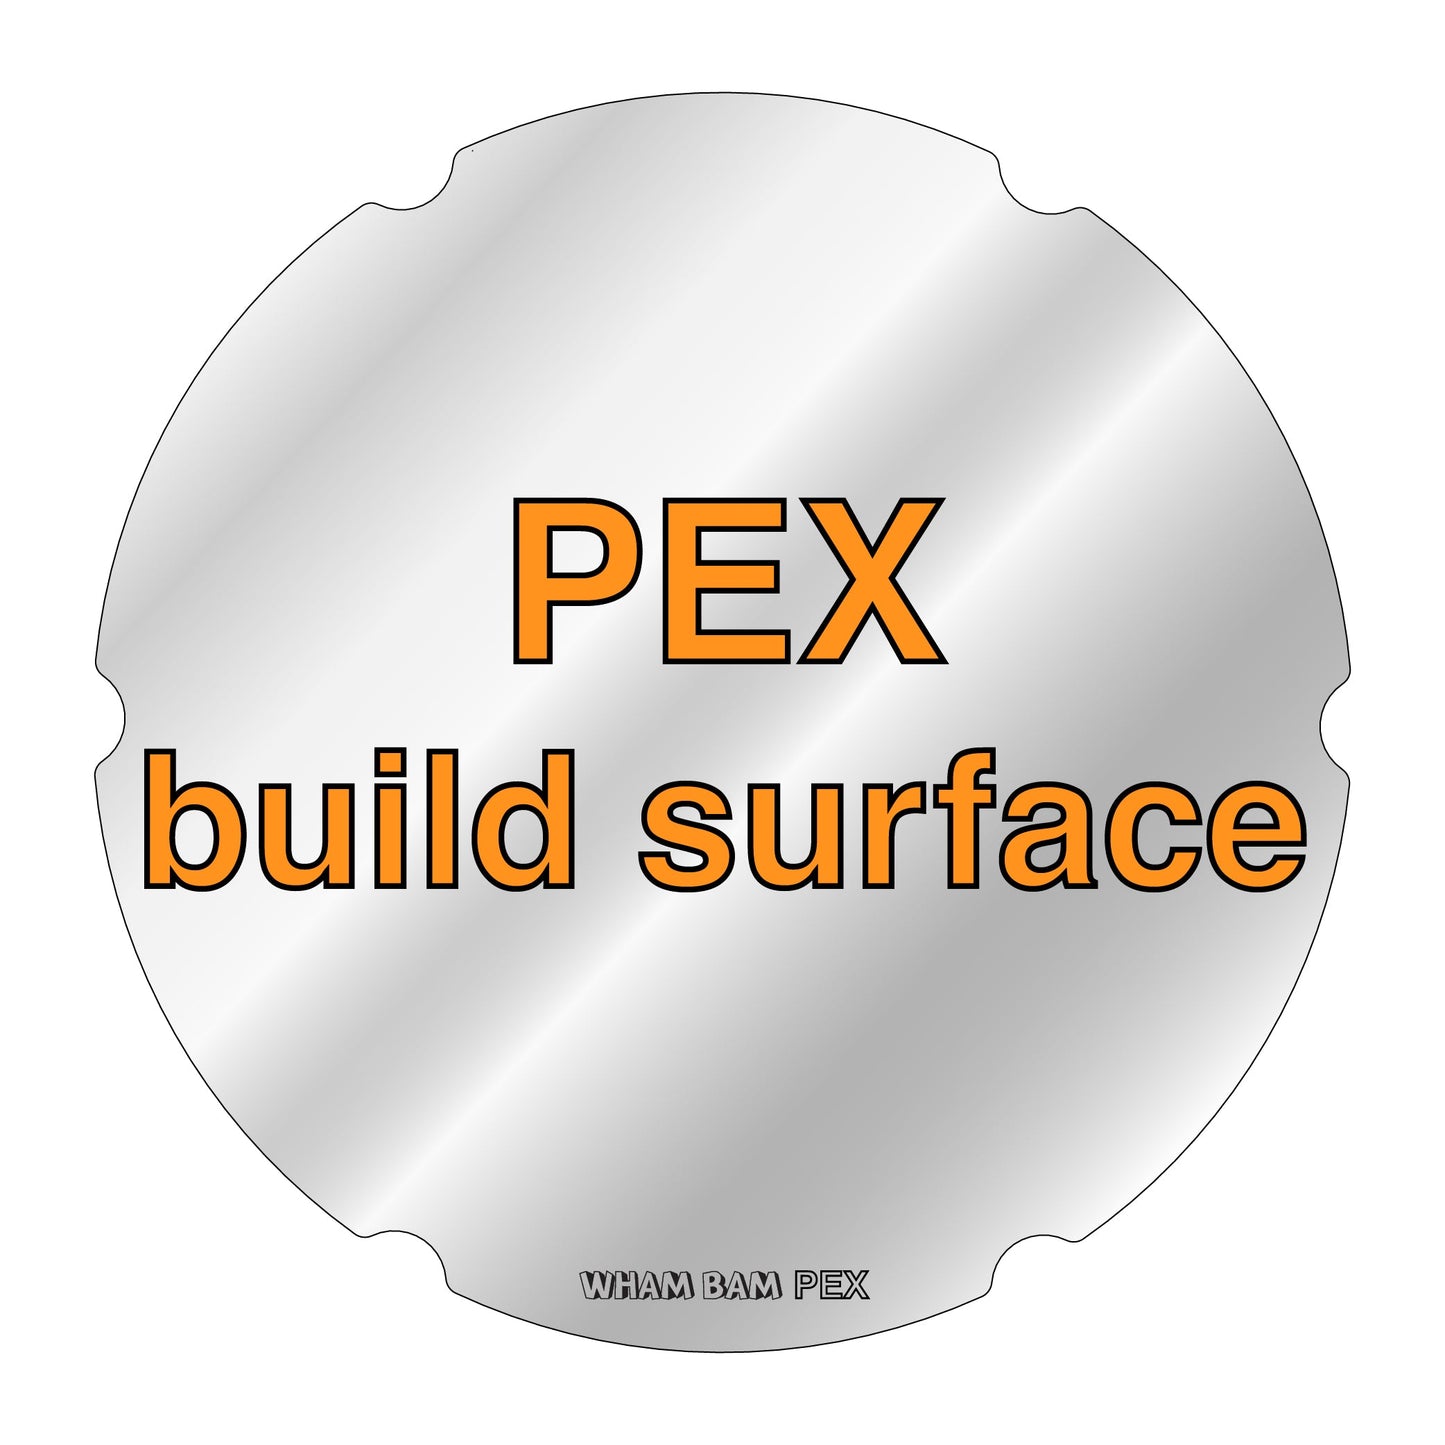 PEX Build Surface - 220Ø - FLSun Delta Mini & Q5 Delta, SEEMECNC Orion & H2